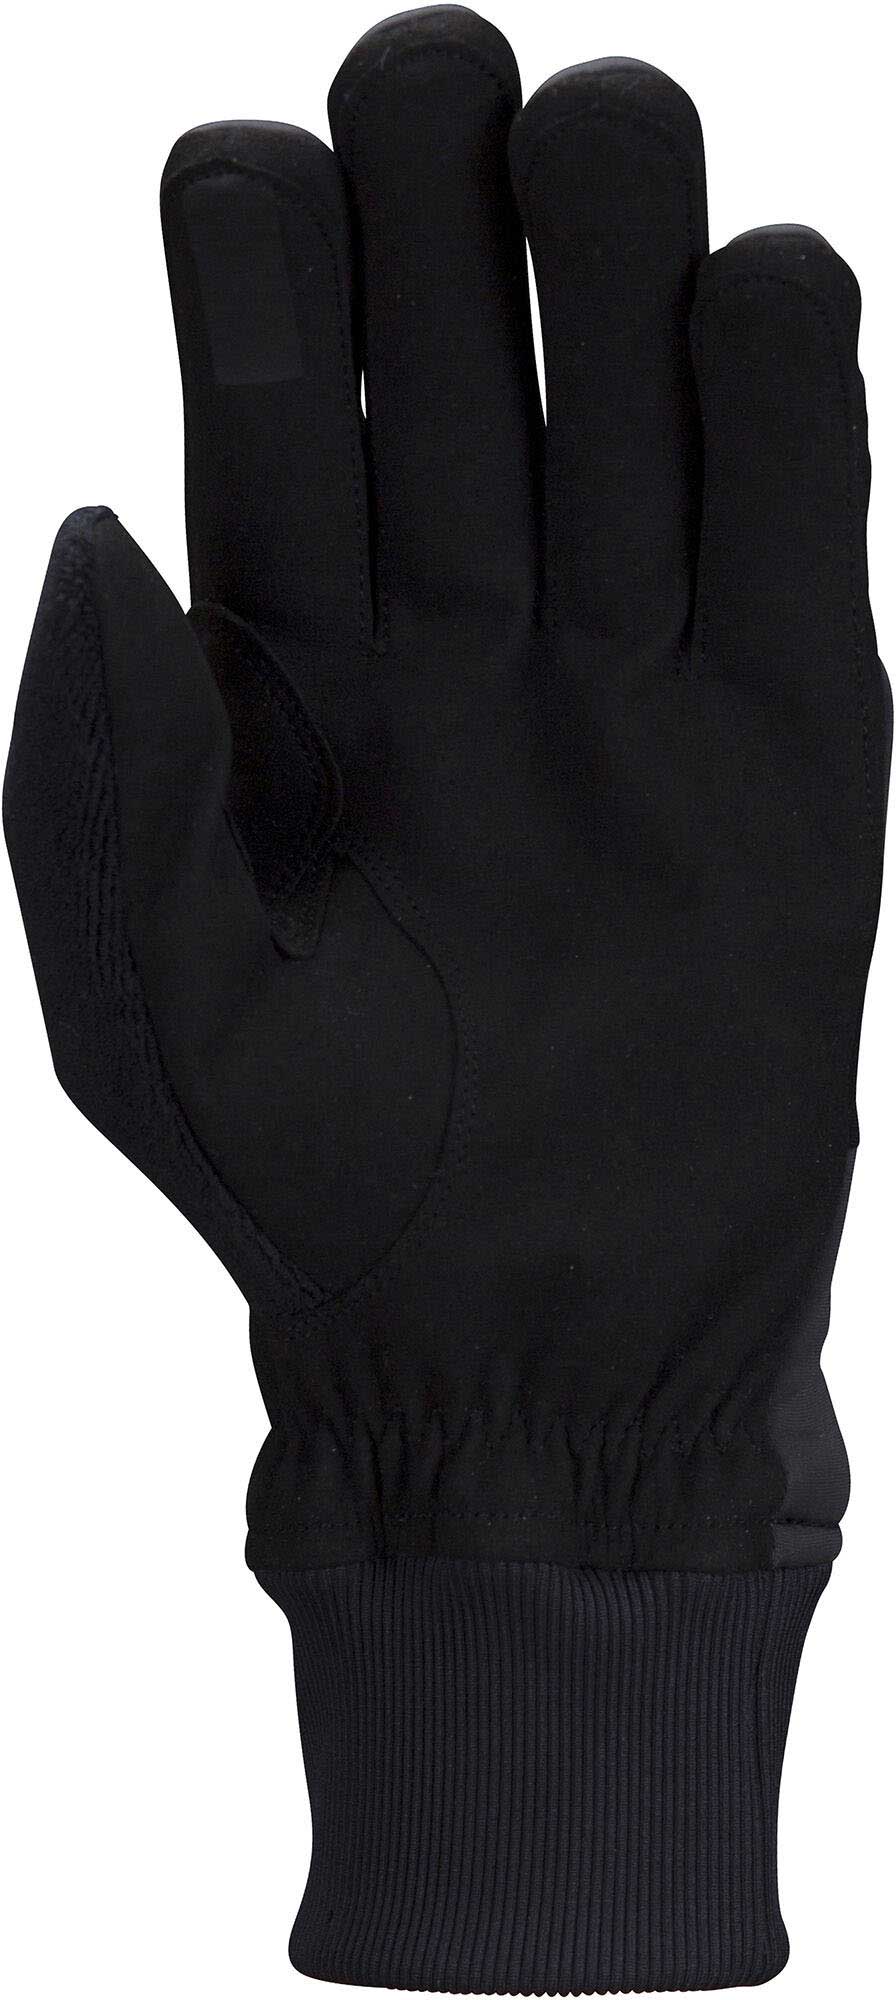 Men’s Nordic ski gloves